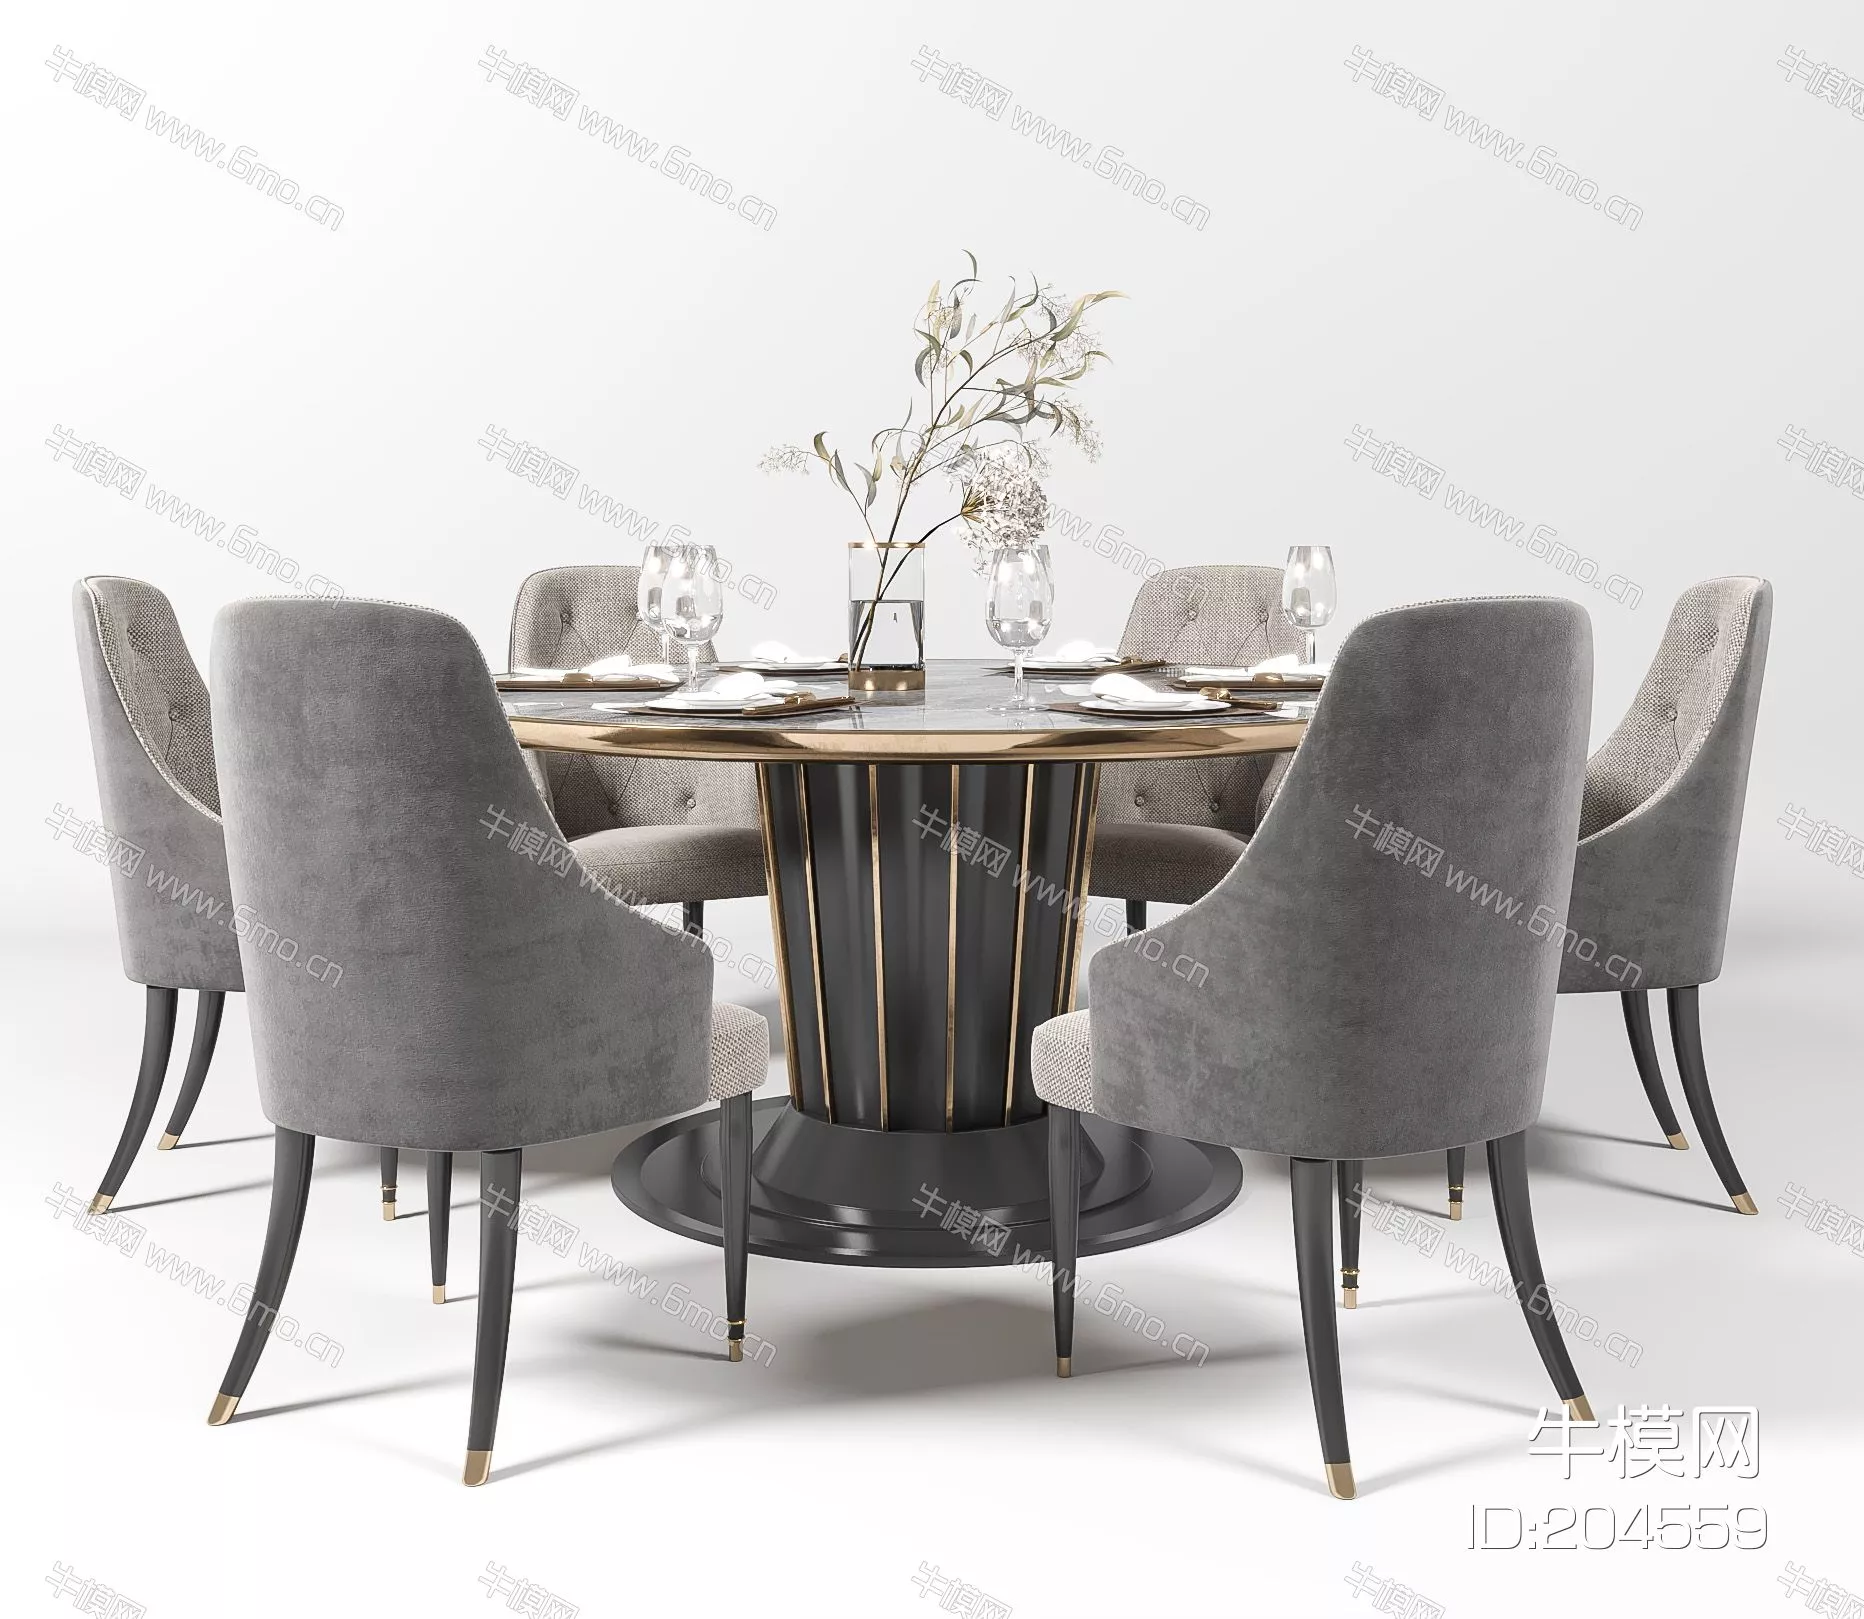 MODERN DINING TABLE SET - SKETCHUP 3D MODEL - ENSCAPE - 204559